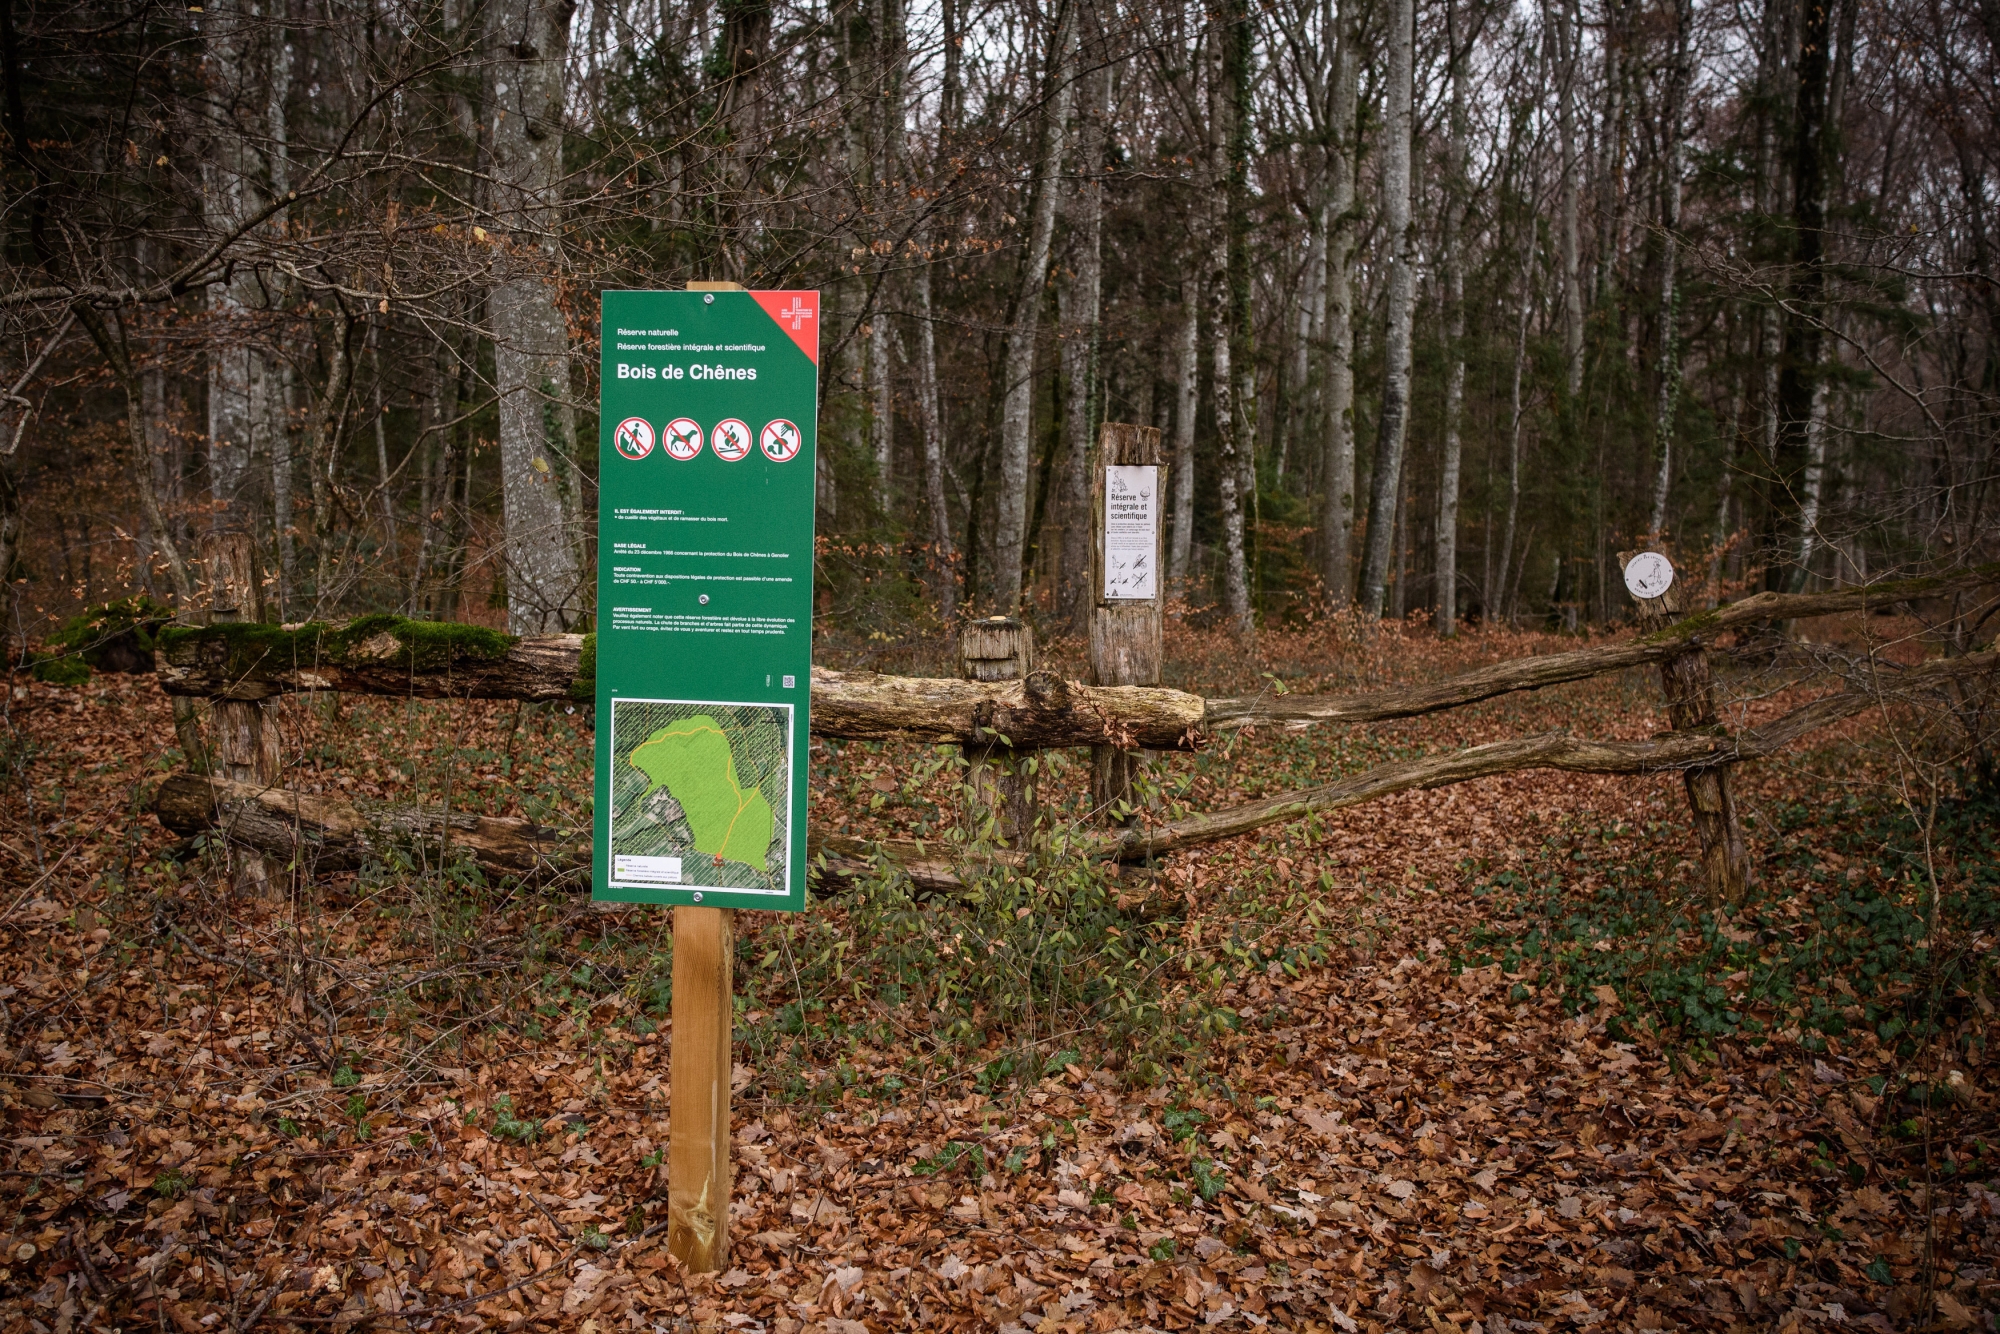 Des panneaux interdisant le passage sur certains sentiers du Bois de Chênes attisent les tensions.